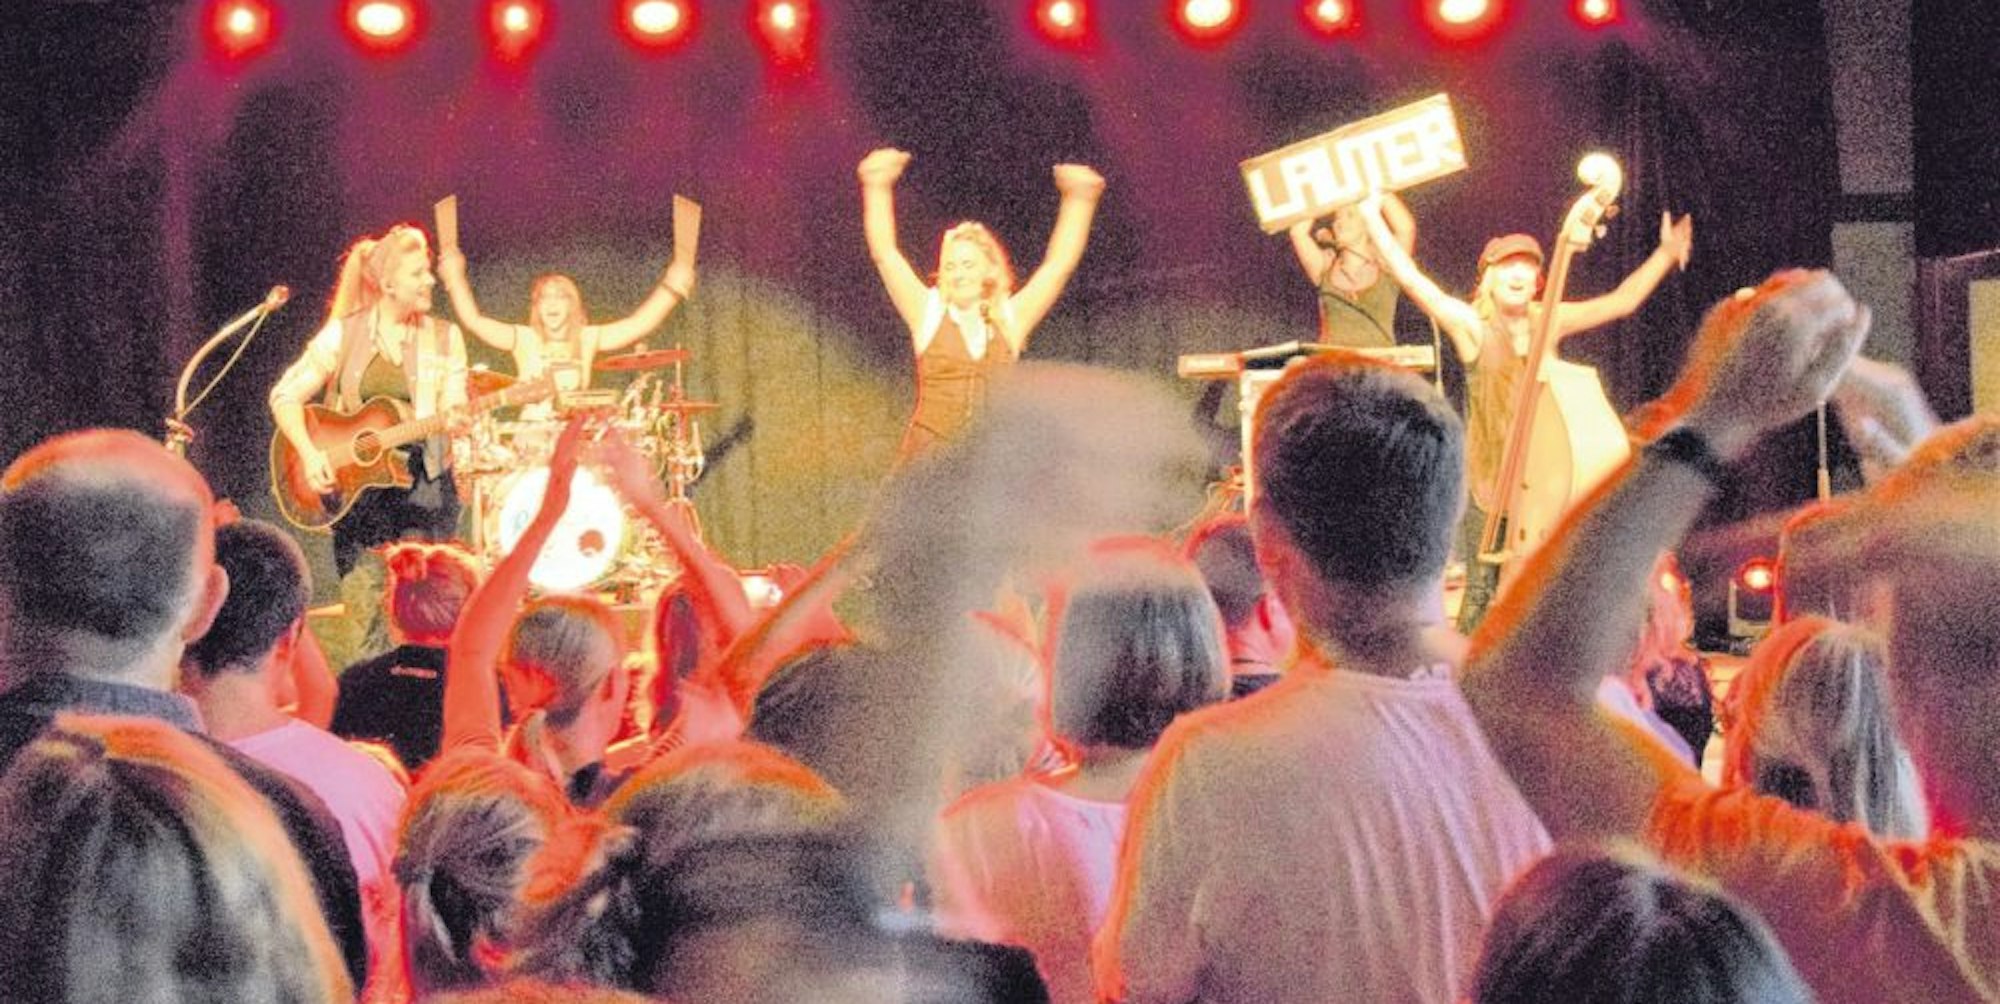 Die Rockemarieche aus Köln erfreuten die Fans in Erftstadt mit ihrer Performance.